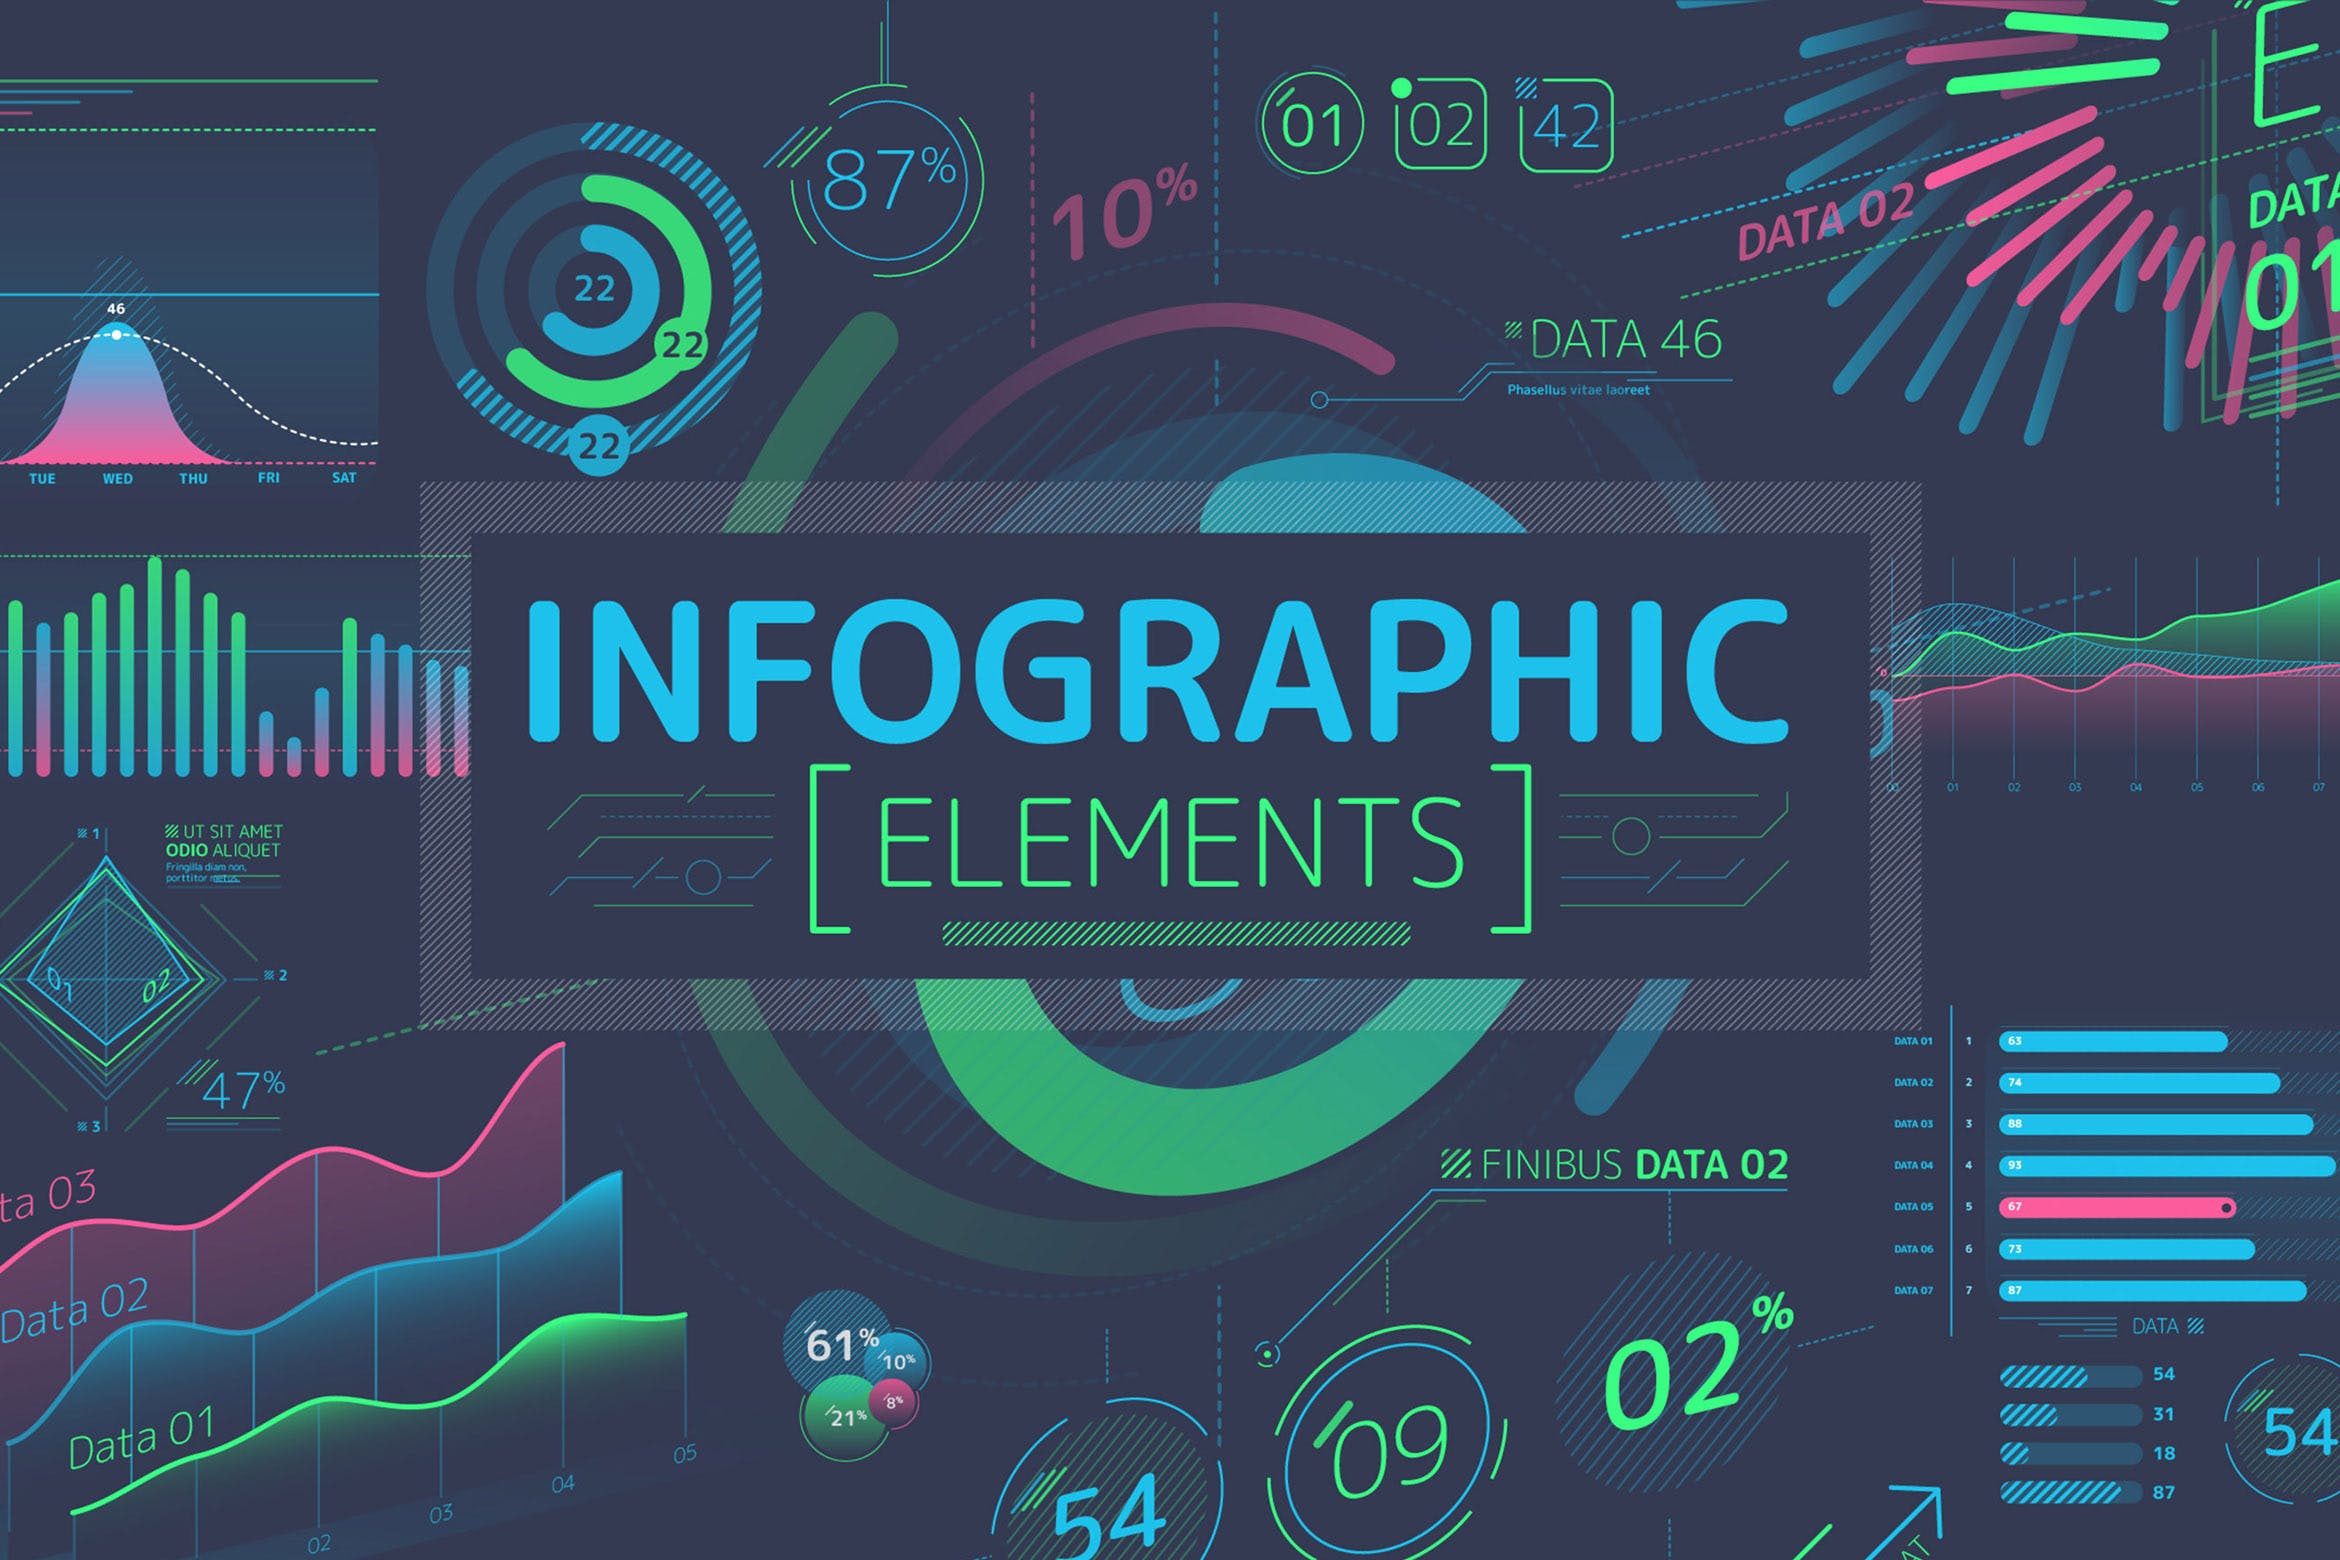 扁平化设计风格信息图表数据演示设计素材 Flat Infographic Elements插图